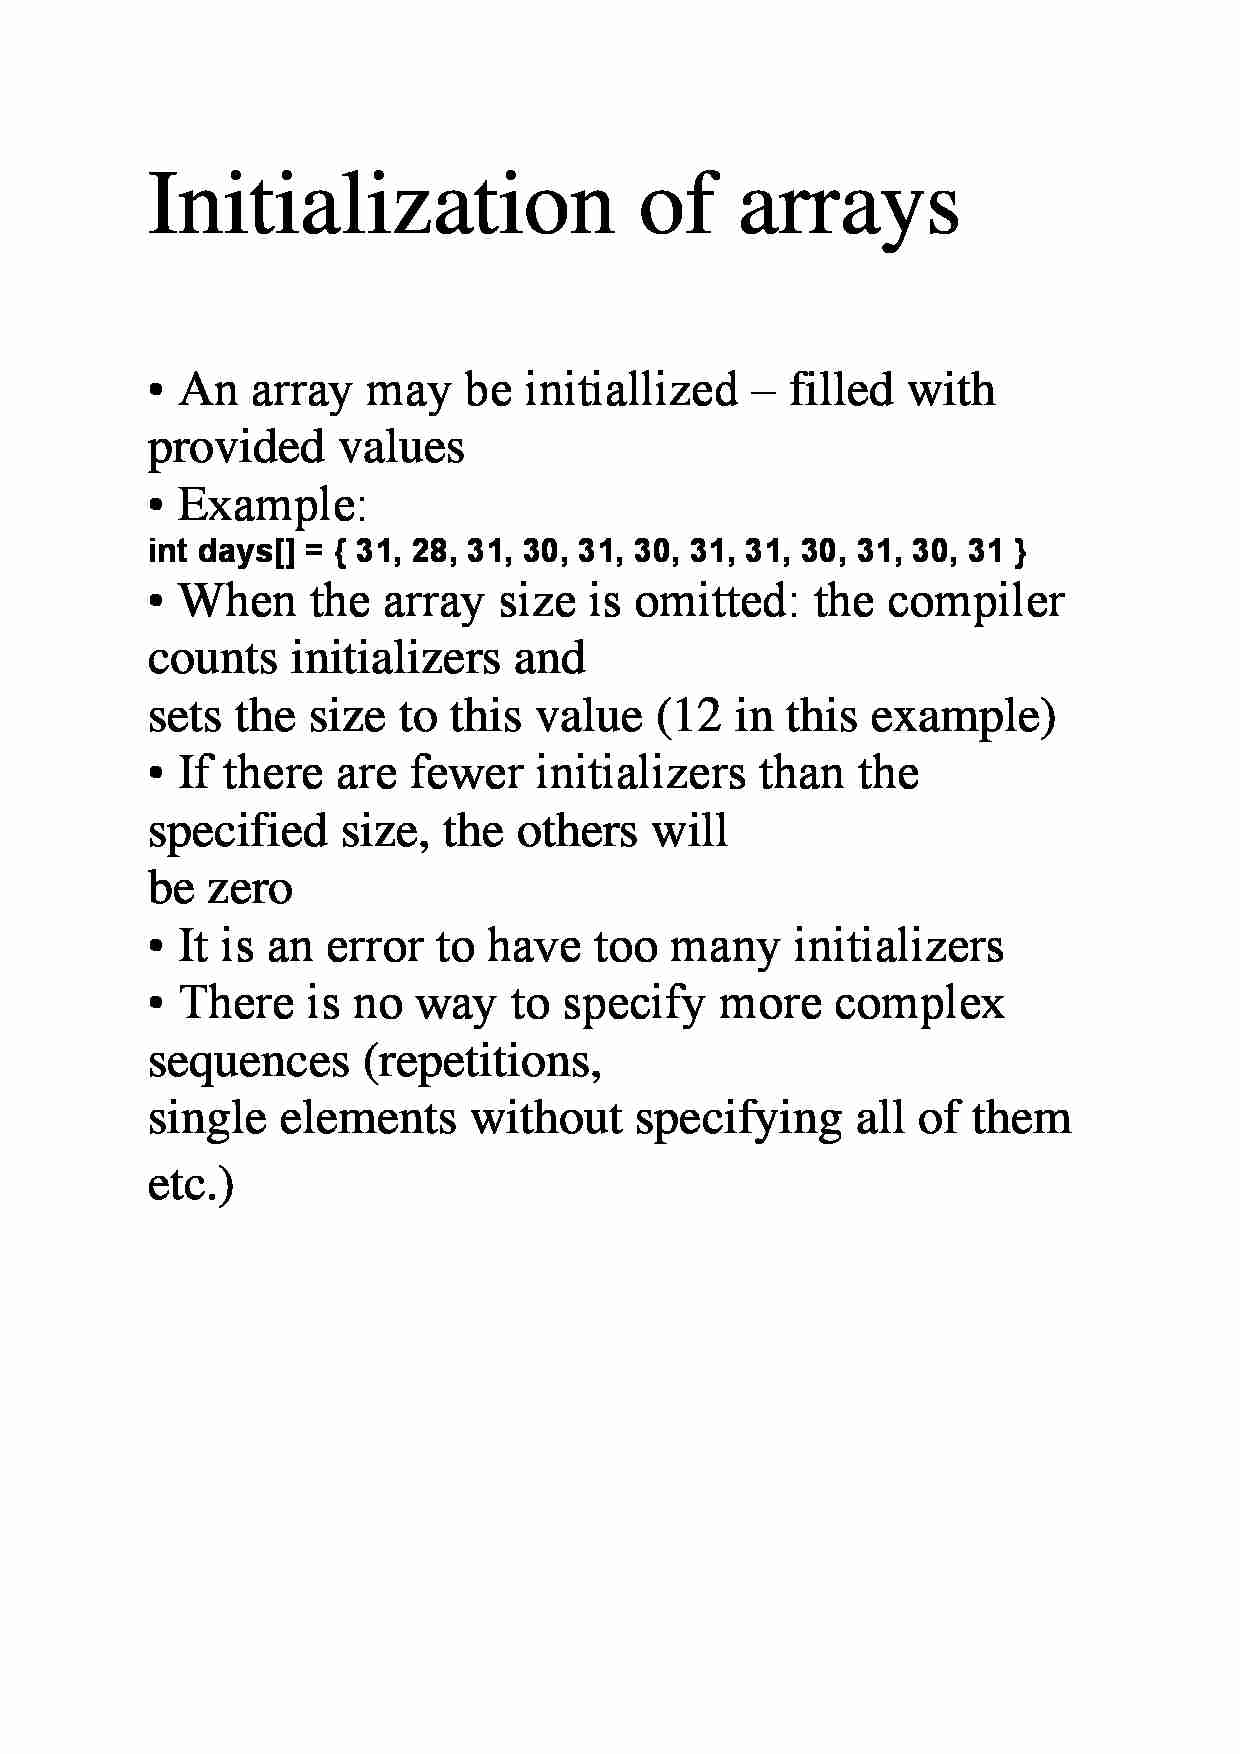 Initialization of arrays - strona 1